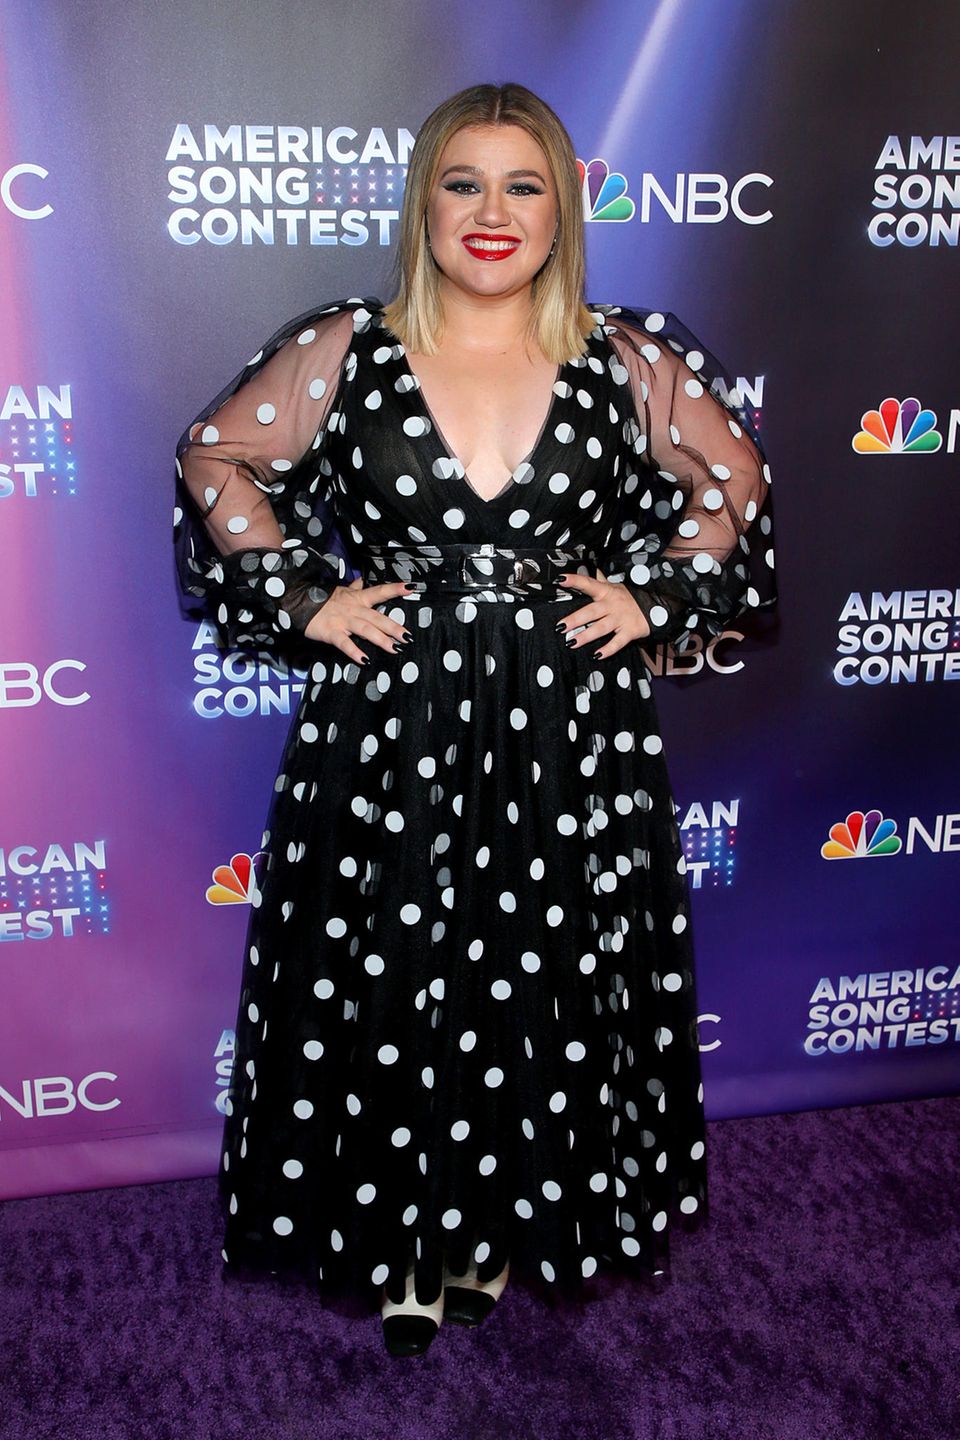 Sängerin Kelly Clarkson verzaubert auf dem Red Carpet der Premiere von "American Song Contest"  mit einem tief ausgeschnittenen schwarzen Kleid mit weißen Punkten. Dazu kombiniert sie weiße High Heels, schwarz lackierte Nägel und kirschroten Lippenstift. Das in A-Linie geschnittene Kleid wird durch die durchsichtigen Blousonärmel zum Hingucker.